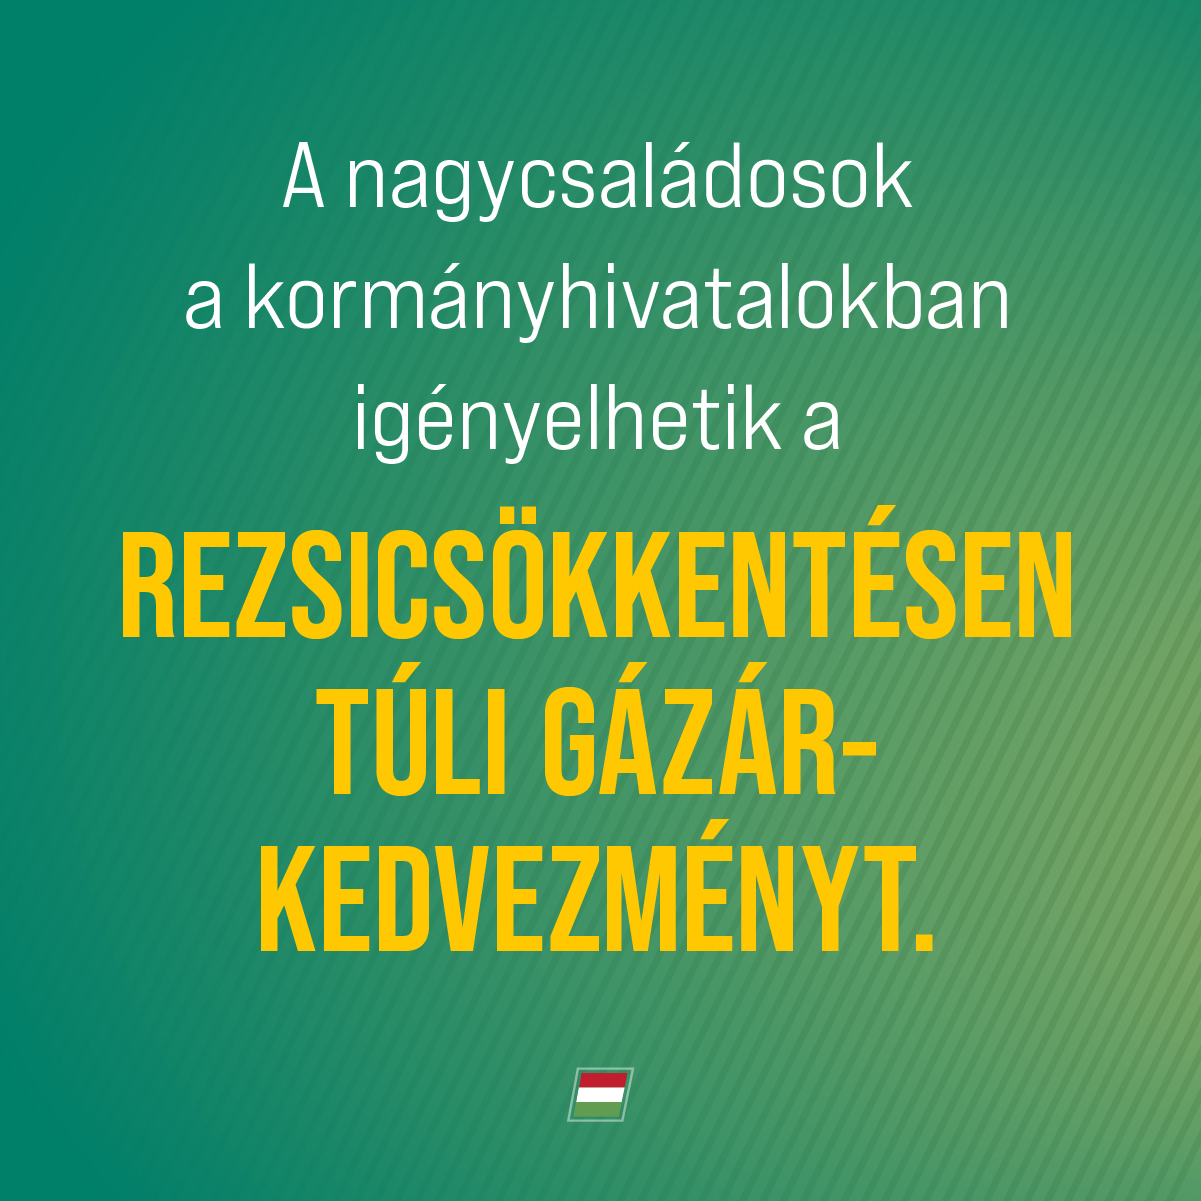 Ma léptek érvénybe az új szabályok. Európában egyedüliként rezsicsökkentéssel védjük a magyar embereket az átlagfogyasztásig! A nagycsaládos gázár-kedvezmény nem jár automatikusan, az érintettek a Kormányhivatalokban tudják igényelni.